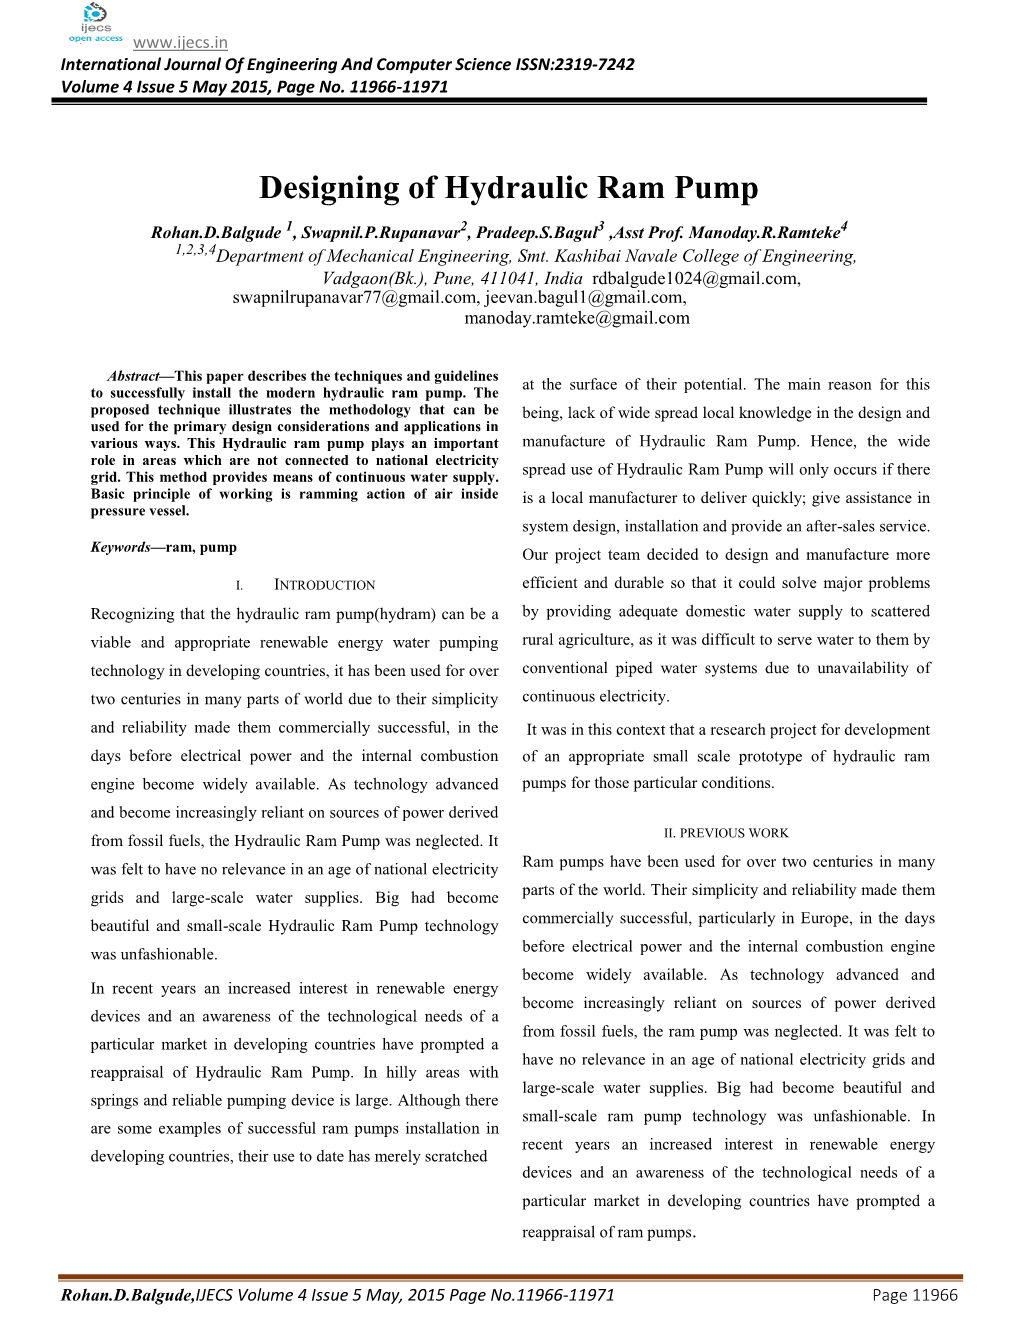 Designing of Hydraulic Ram Pump